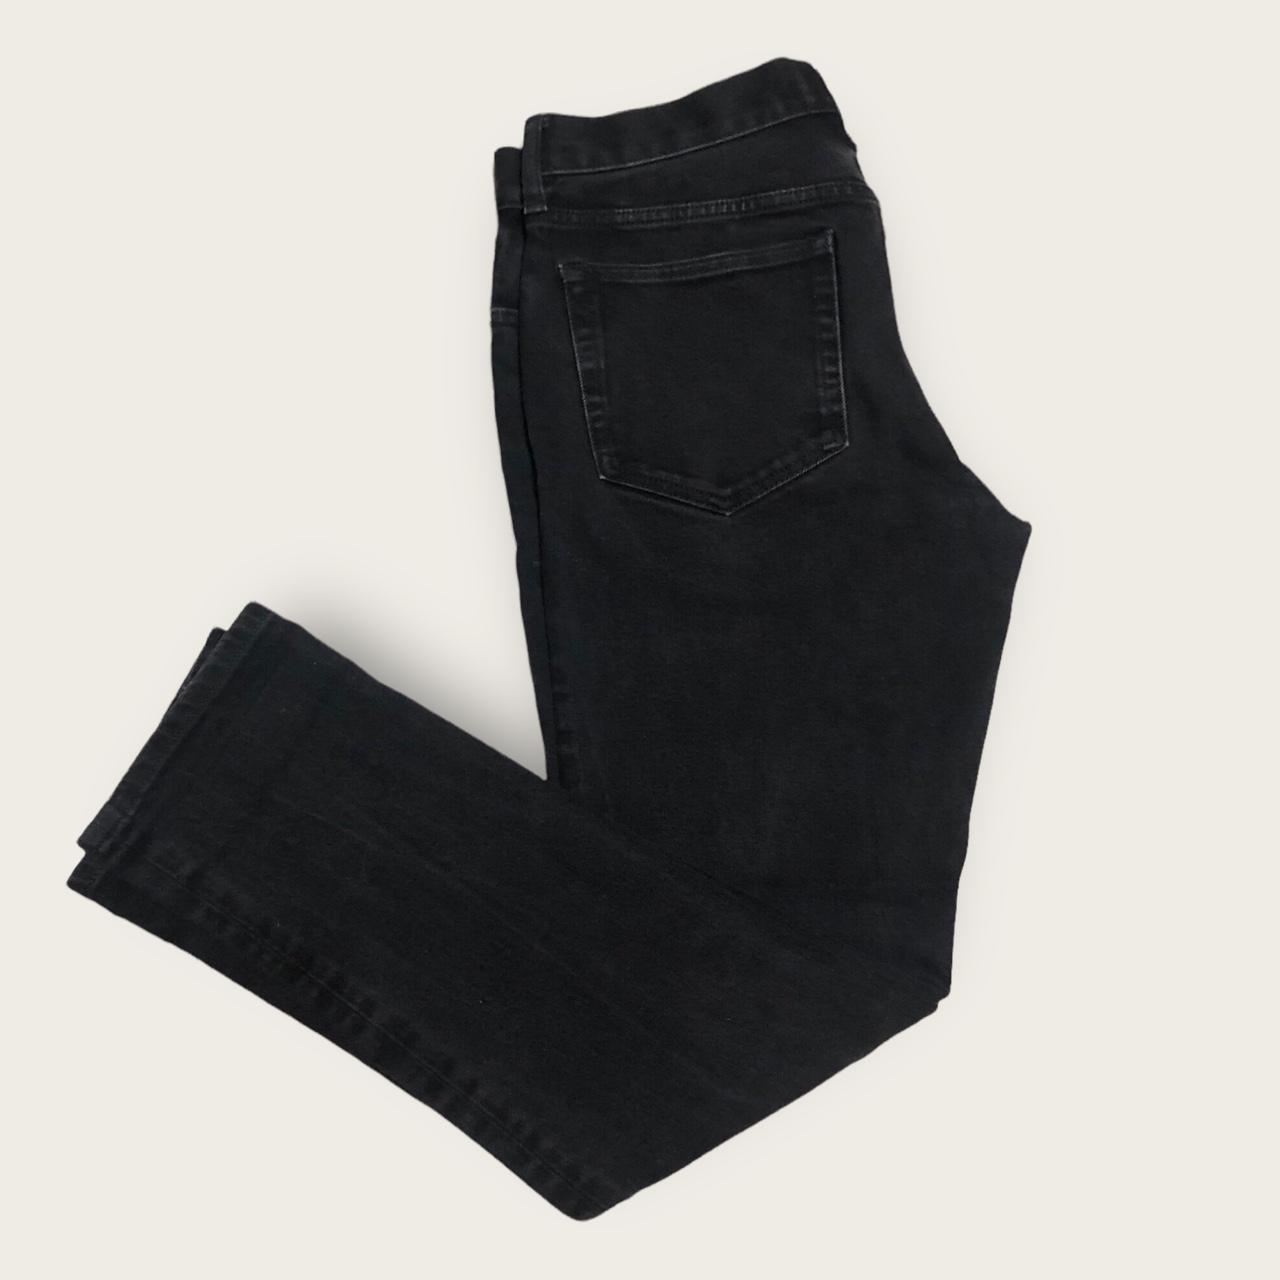 Black Everlane jeans 30x30 Ask for measurements! - Depop